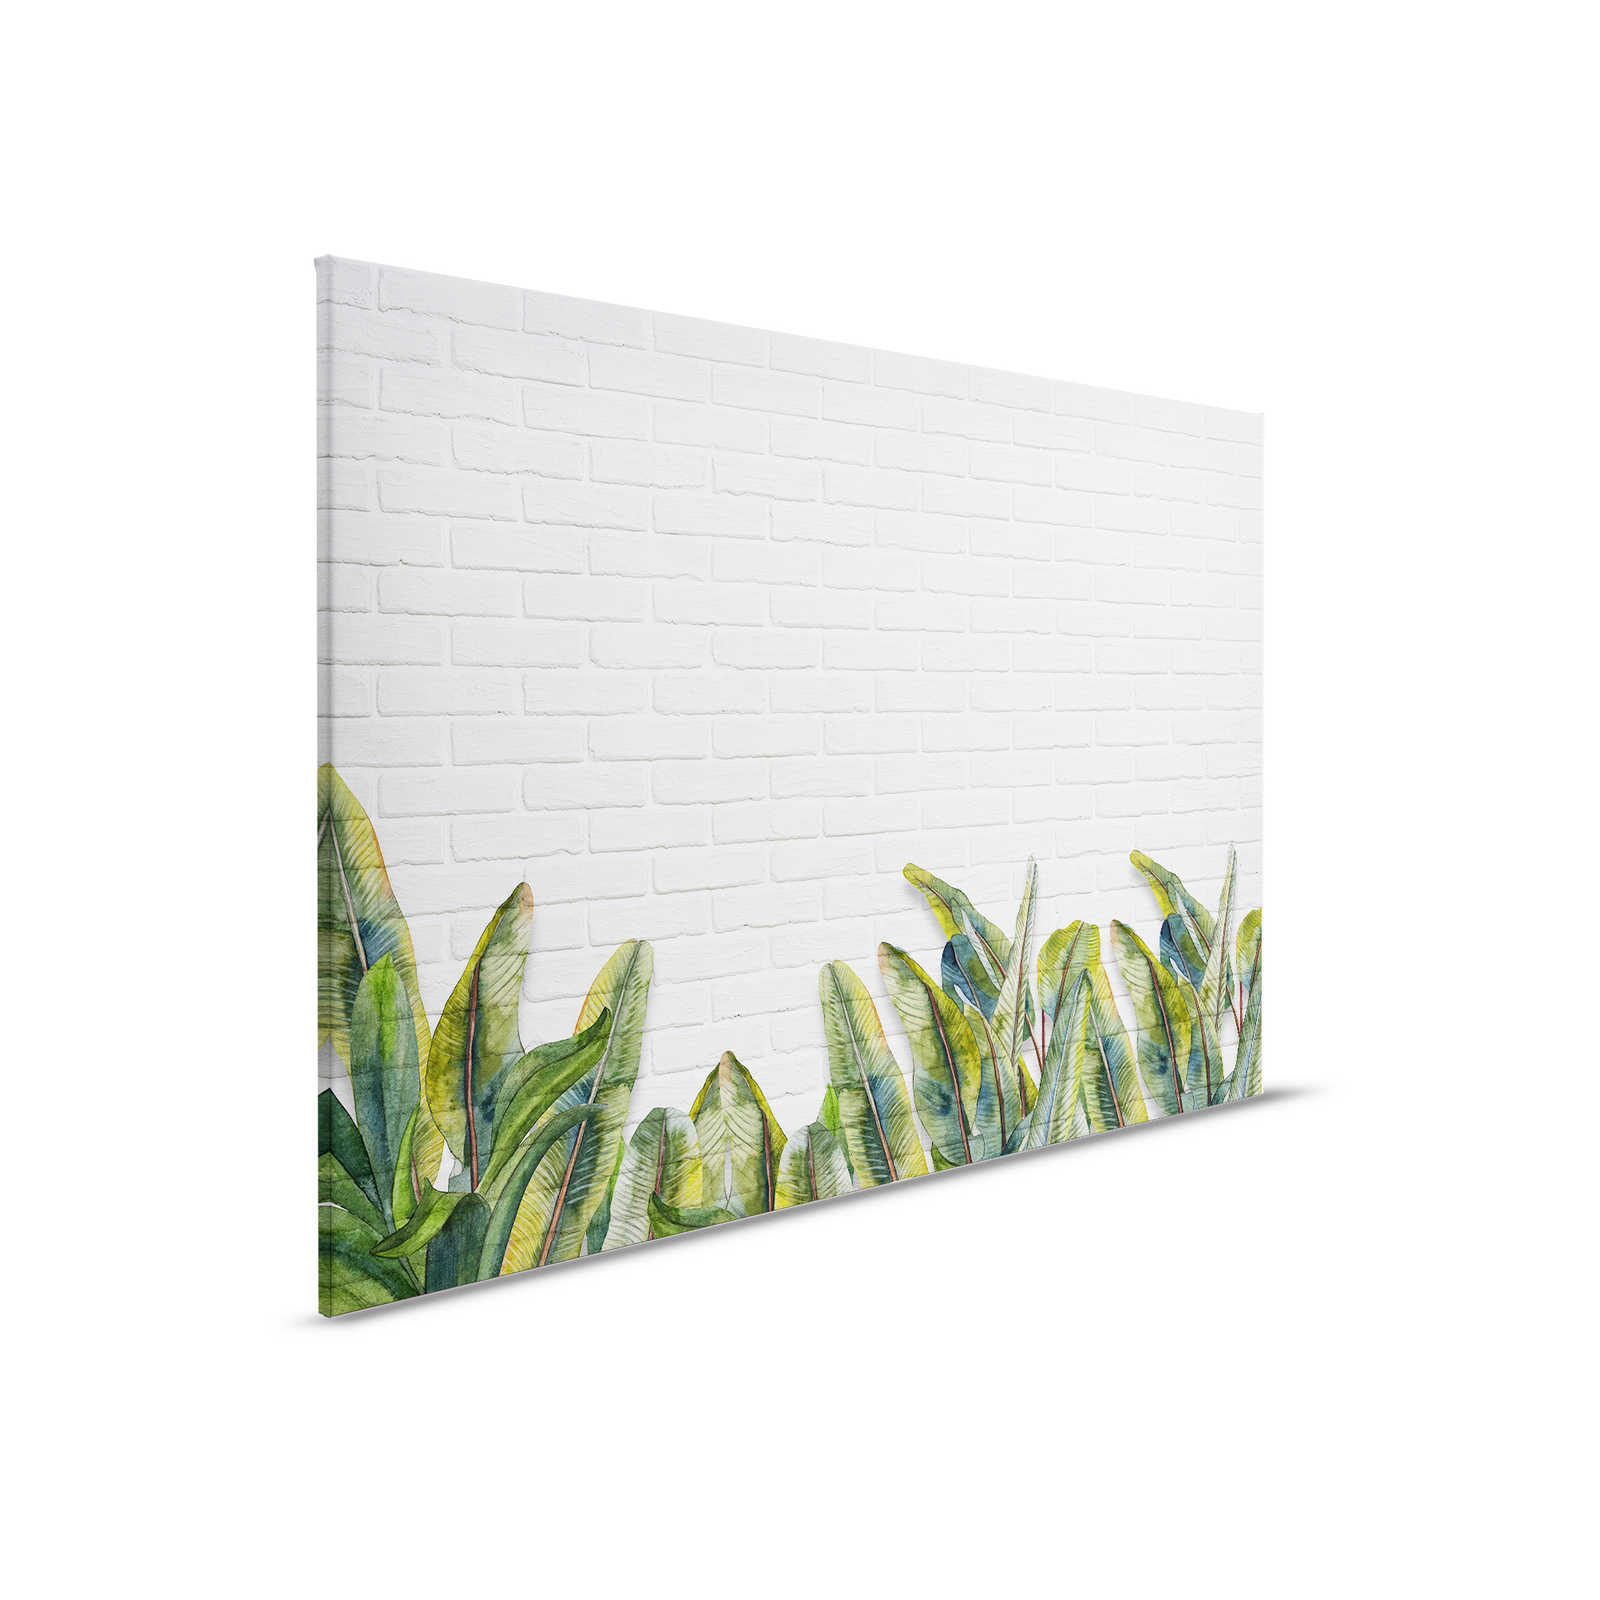 Cuadro en lienzo con hojas delante de pared de ladrillo blanco - 0,90 m x 0,60 m
